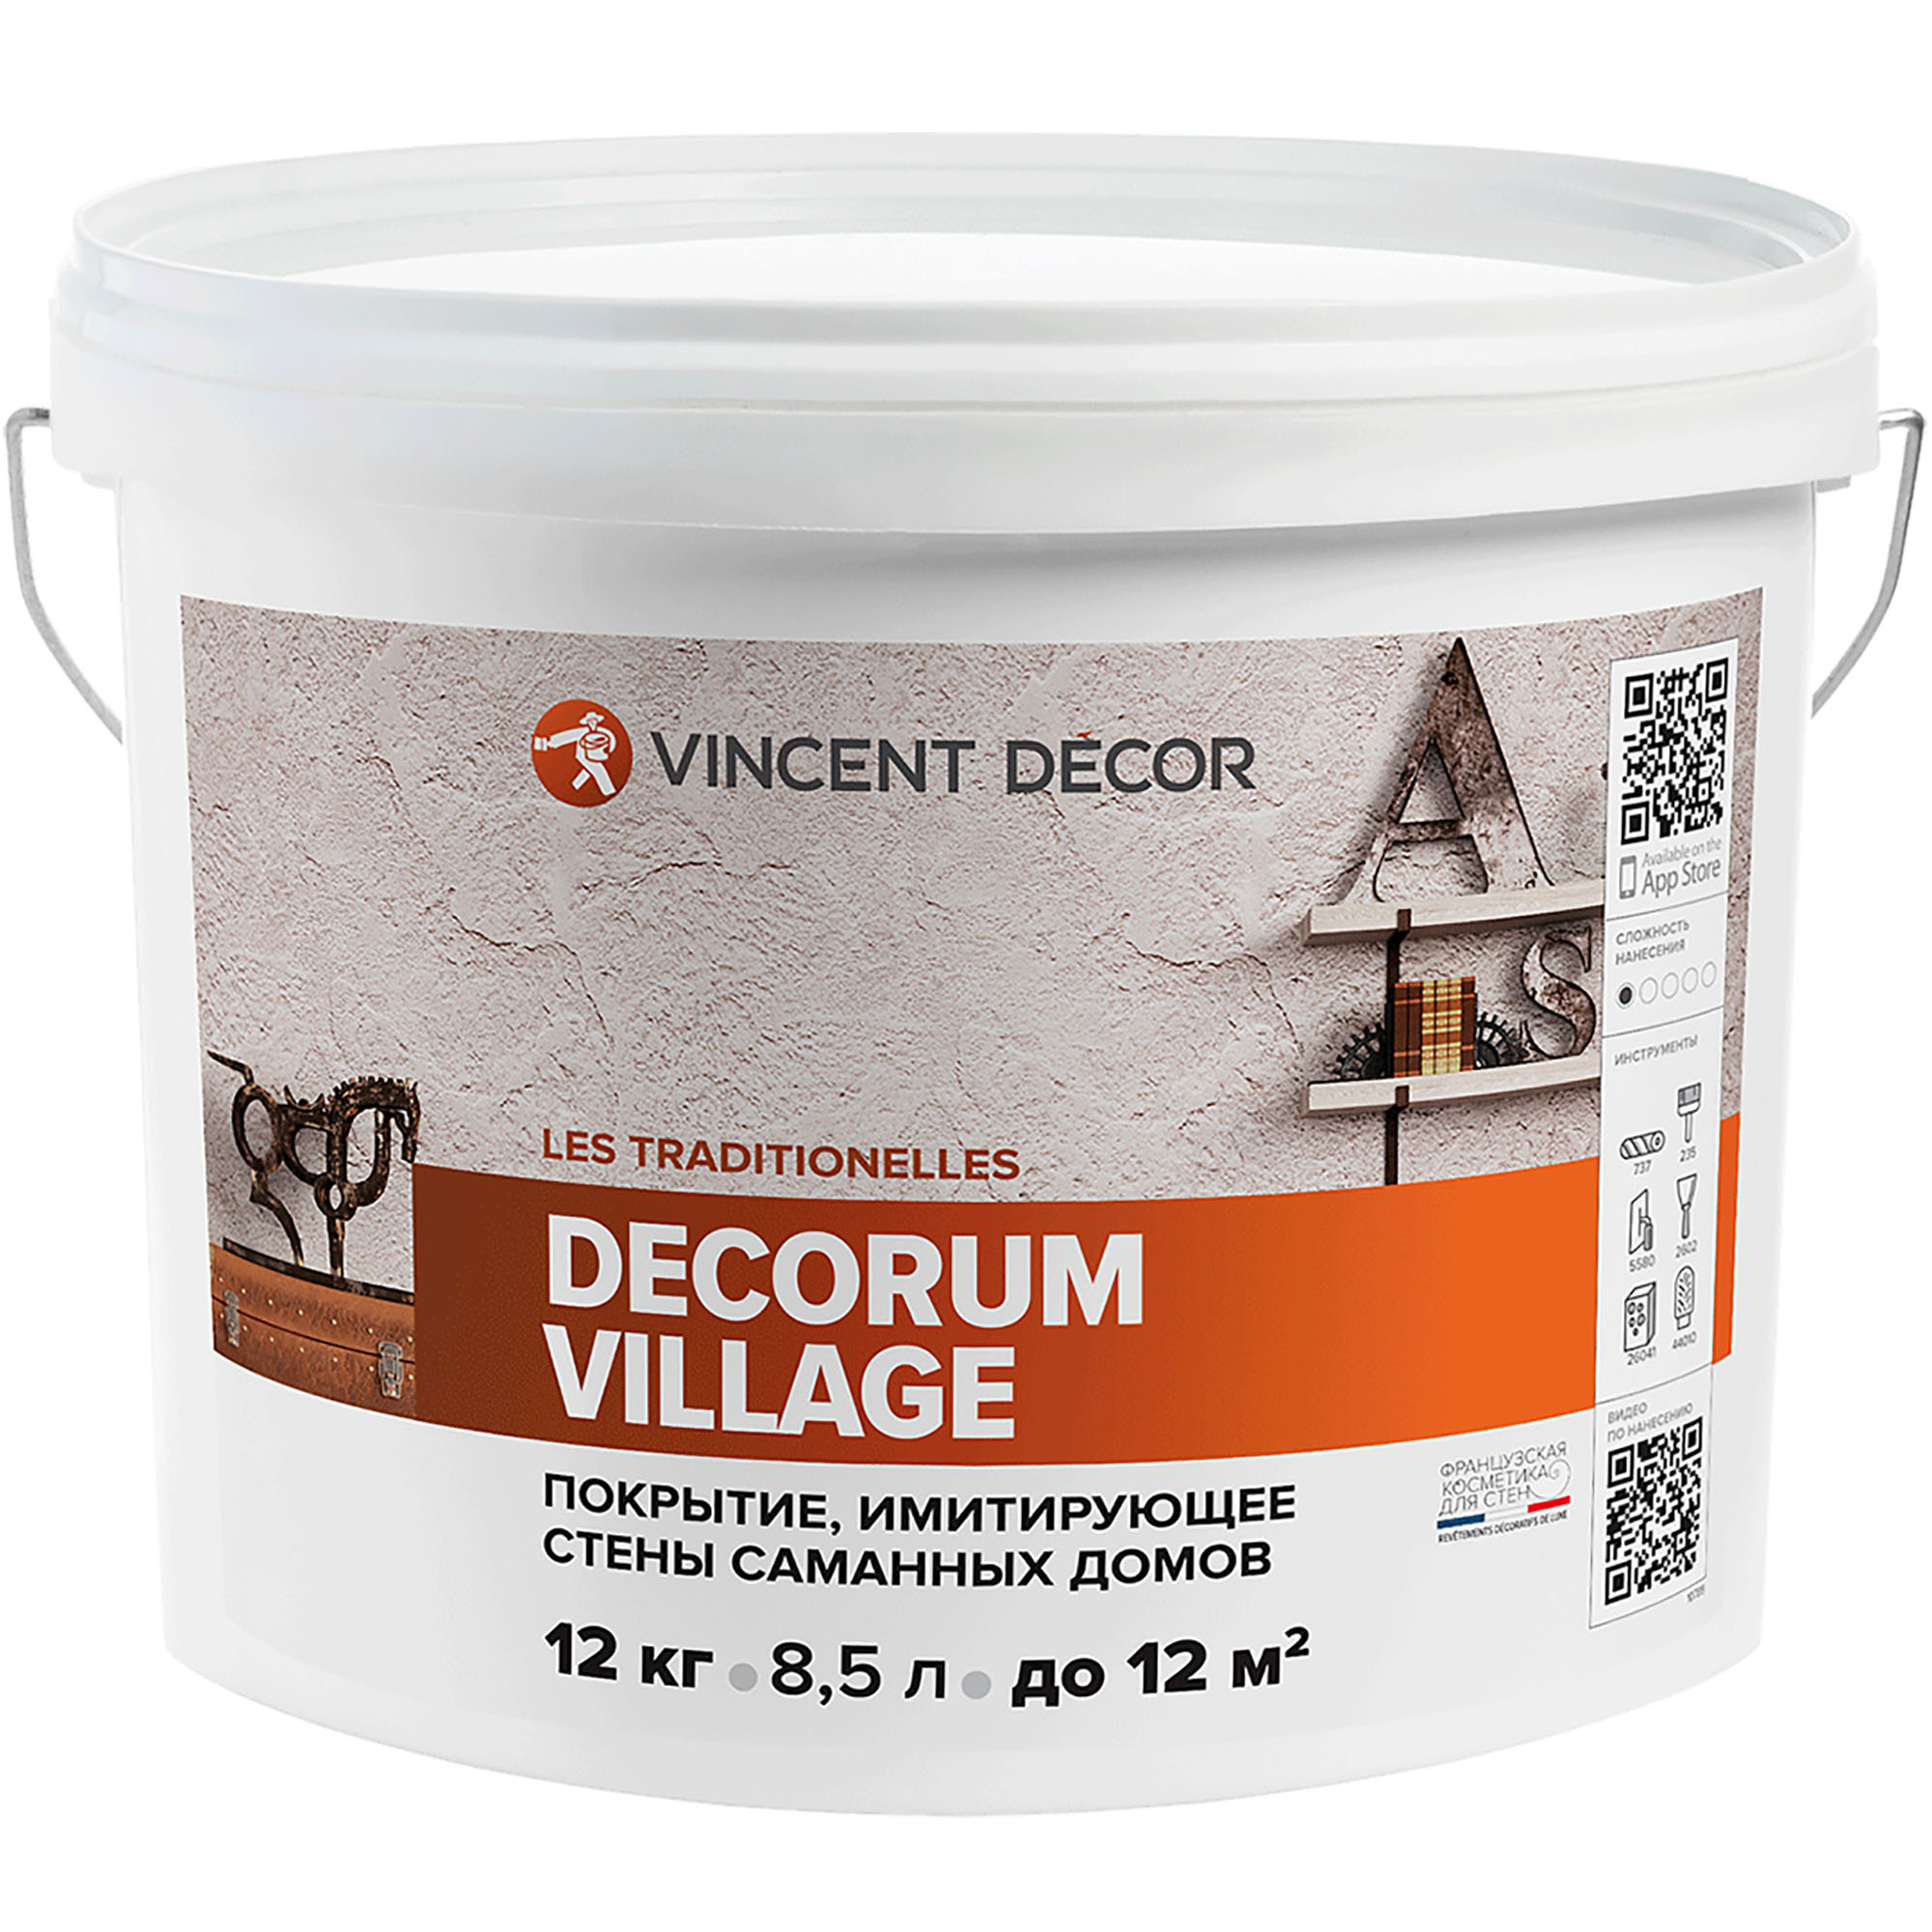 Декоративное покрытие Vincent Decor Decorum Village с эффектом, имитирующий стены саманных домов 12 кг верхнее покрытие лака для ногтей